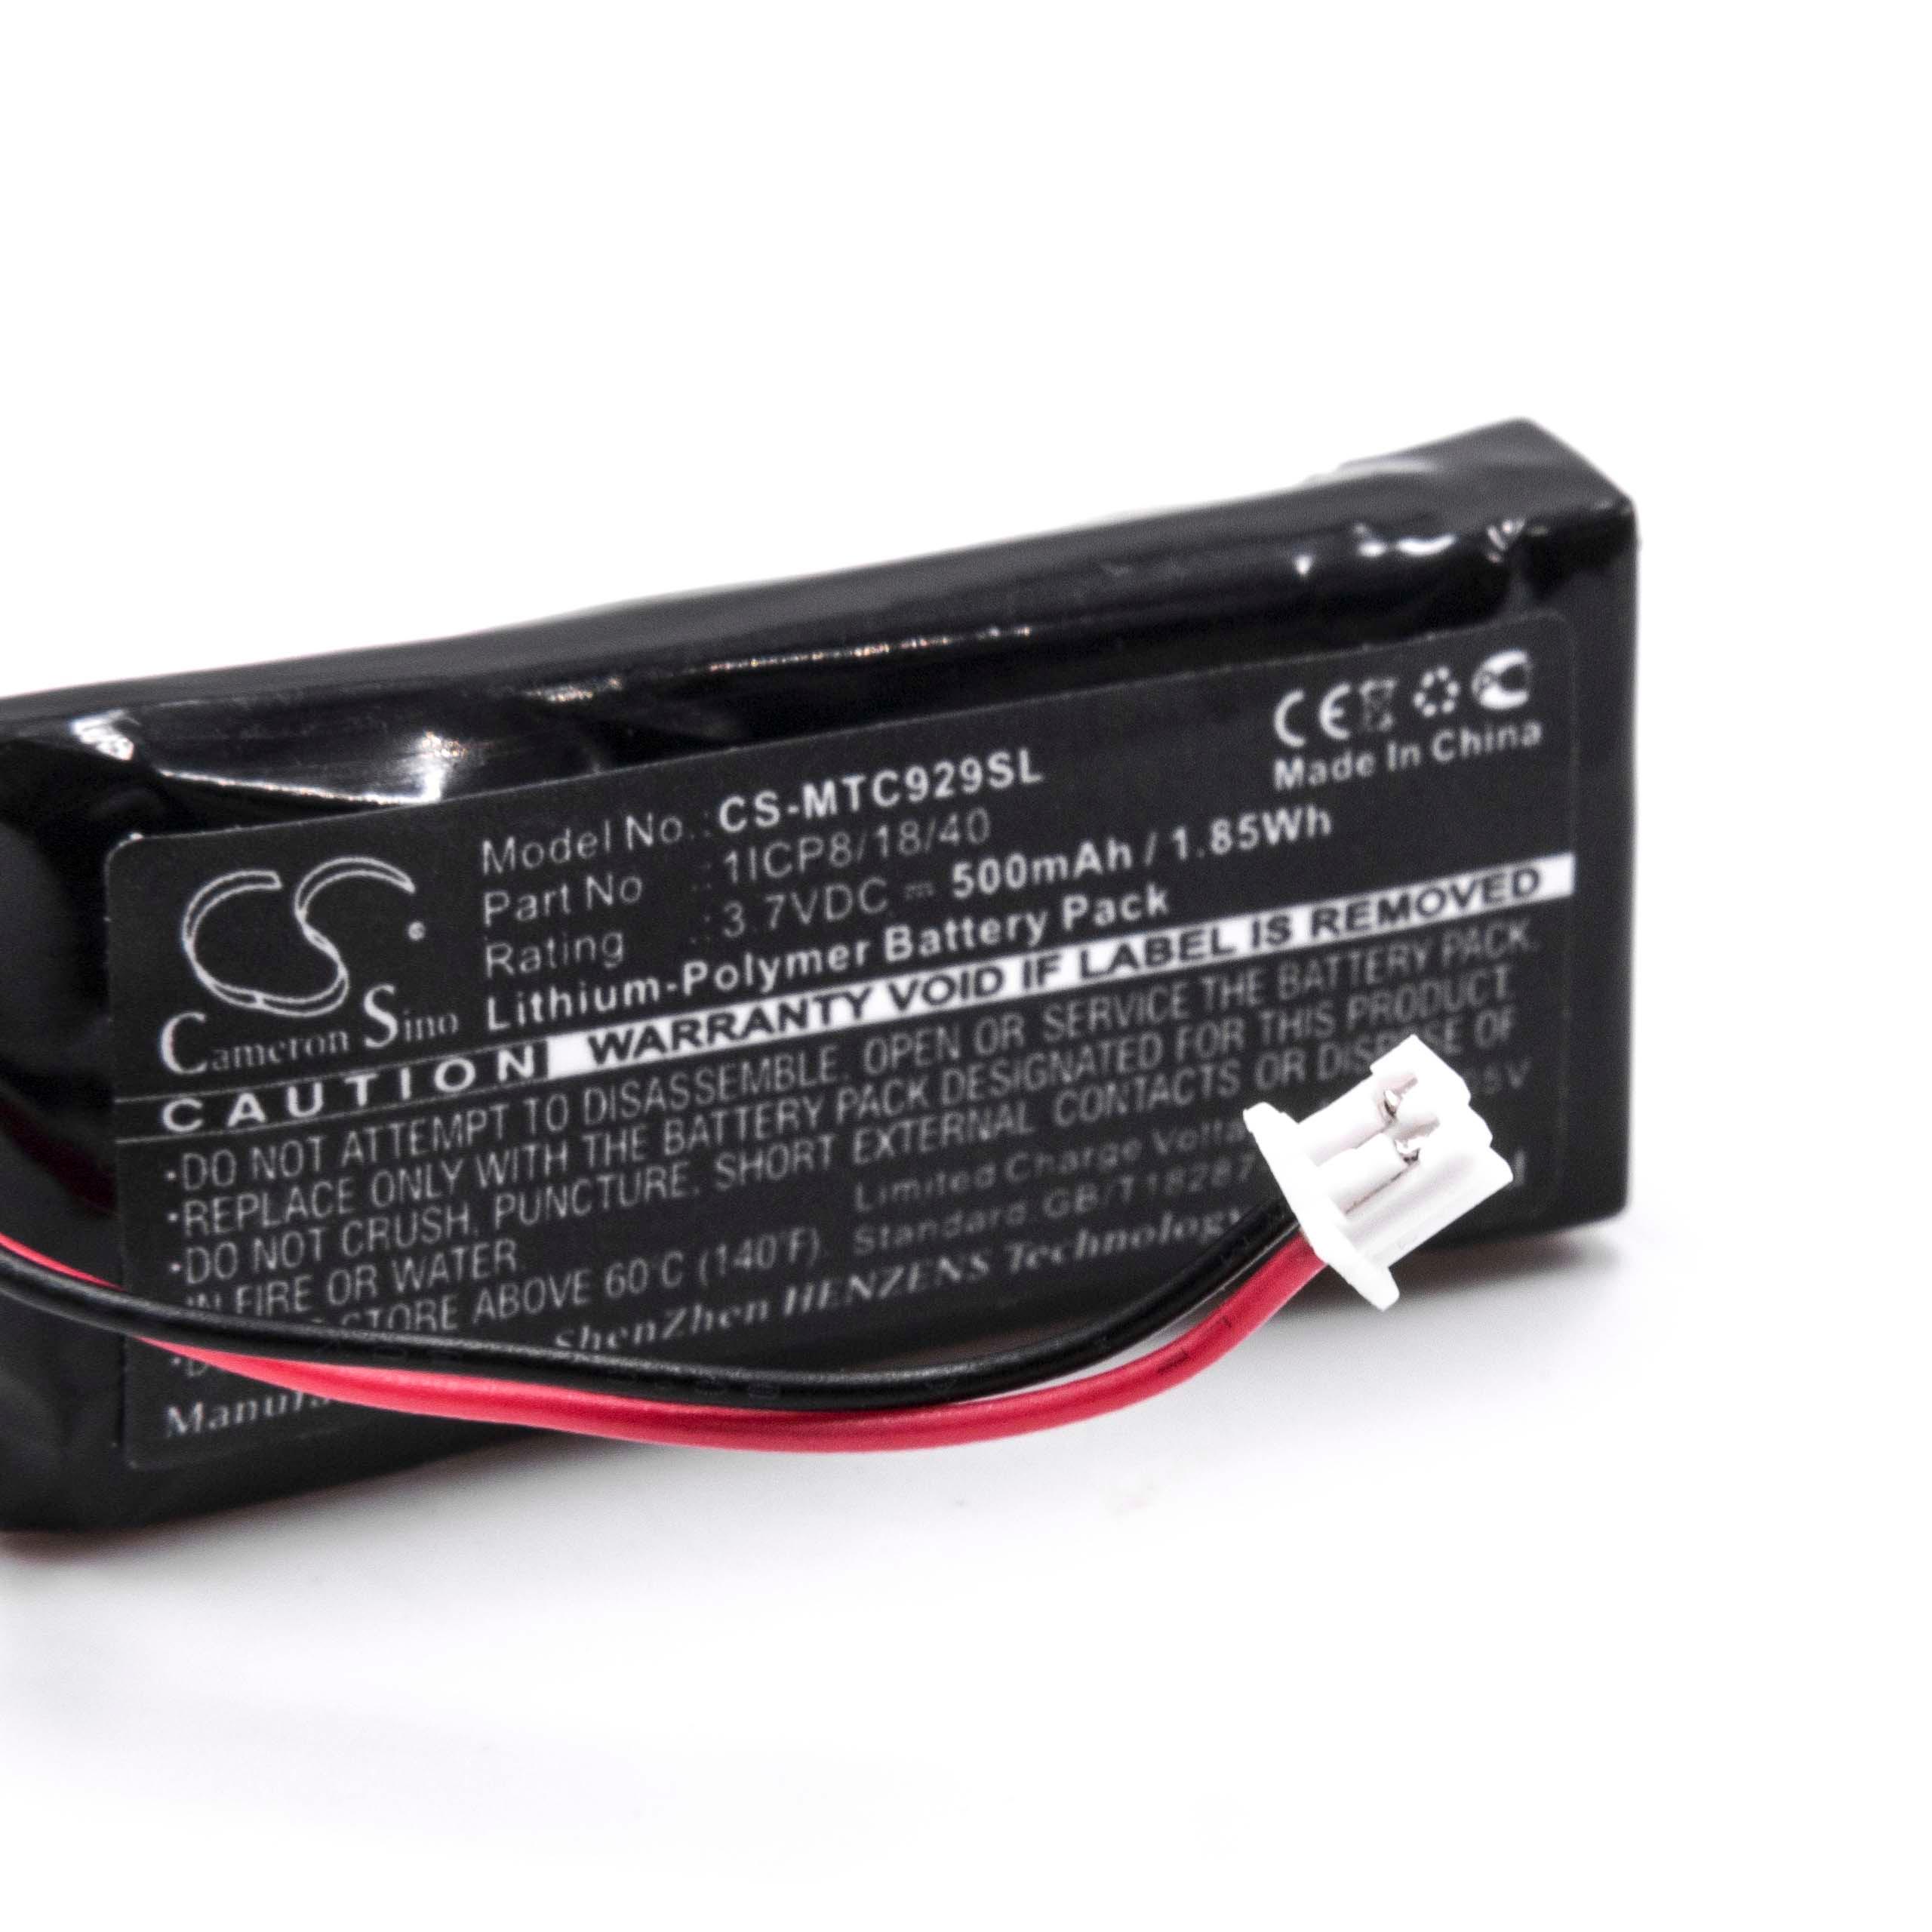 Akumulator do słuchawek bezprzewodowych zamiennik Midland 1ICP8/18/40 - 500 mAh 3,7 V LiPo